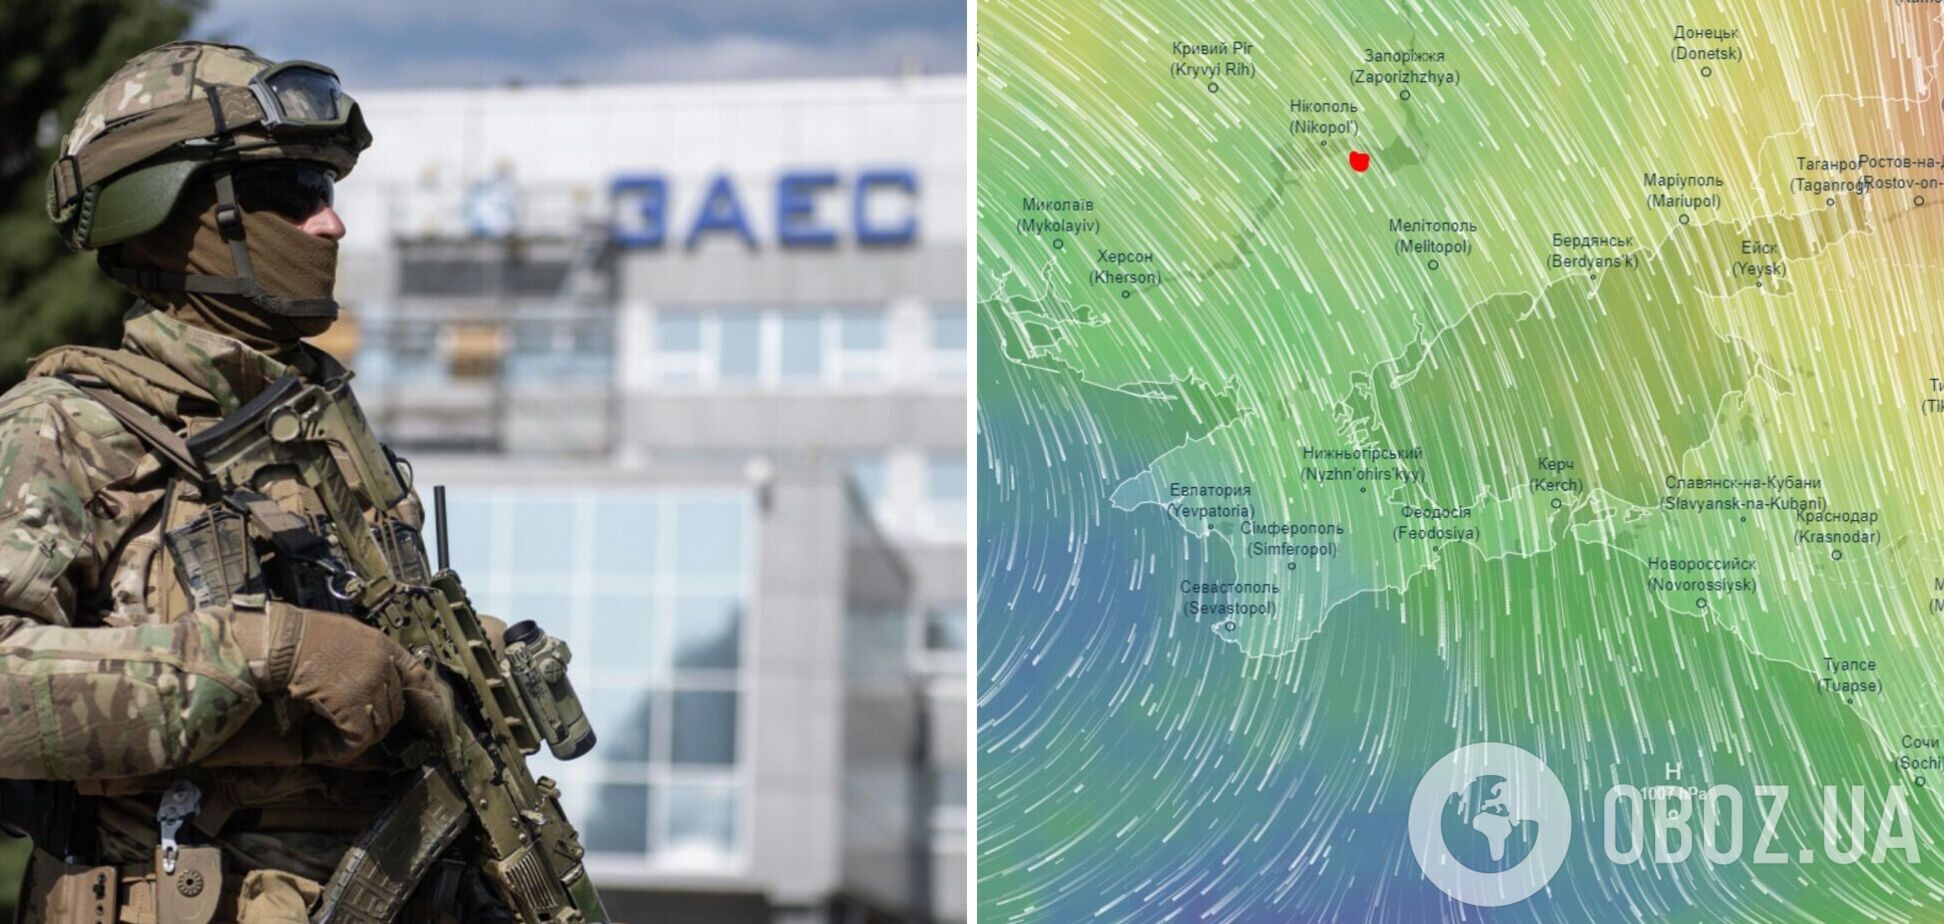 Постраждають Болгарія, Румунія і Туреччина: експерти дали прогнози щодо радіоактивного ураження в разі аварії на ЗАЕС. Мапа